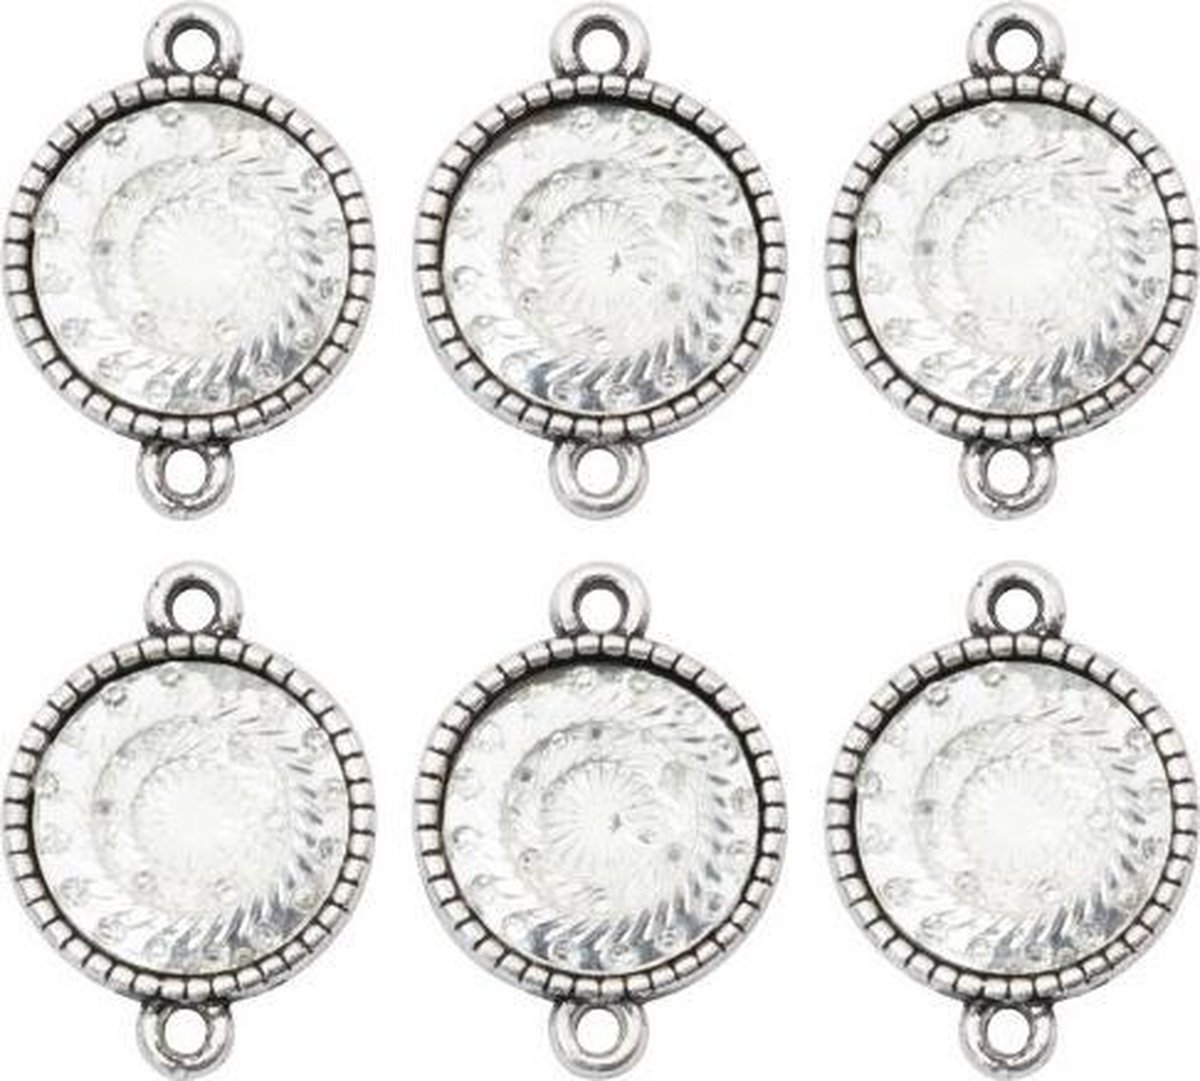 Ranger - Assemblage links - 6 stuks - mirroRood medallions